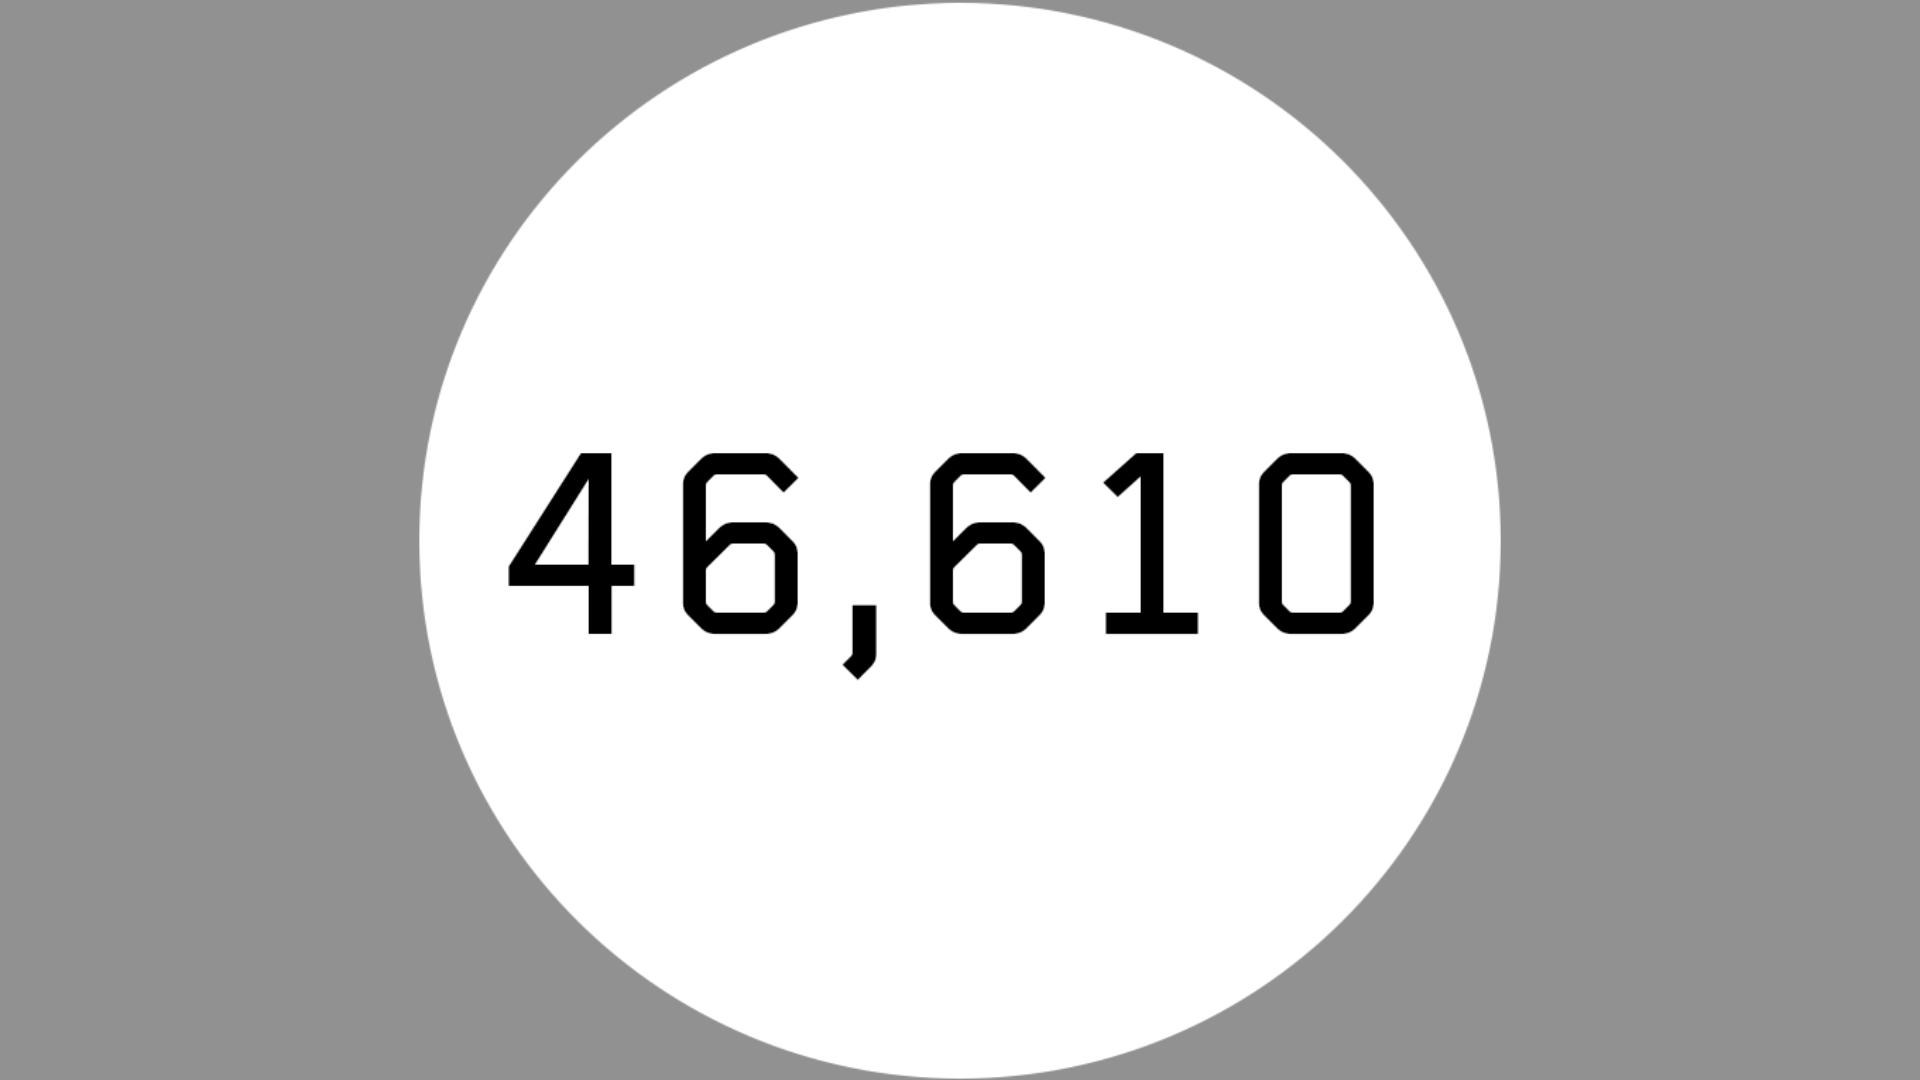 41,610